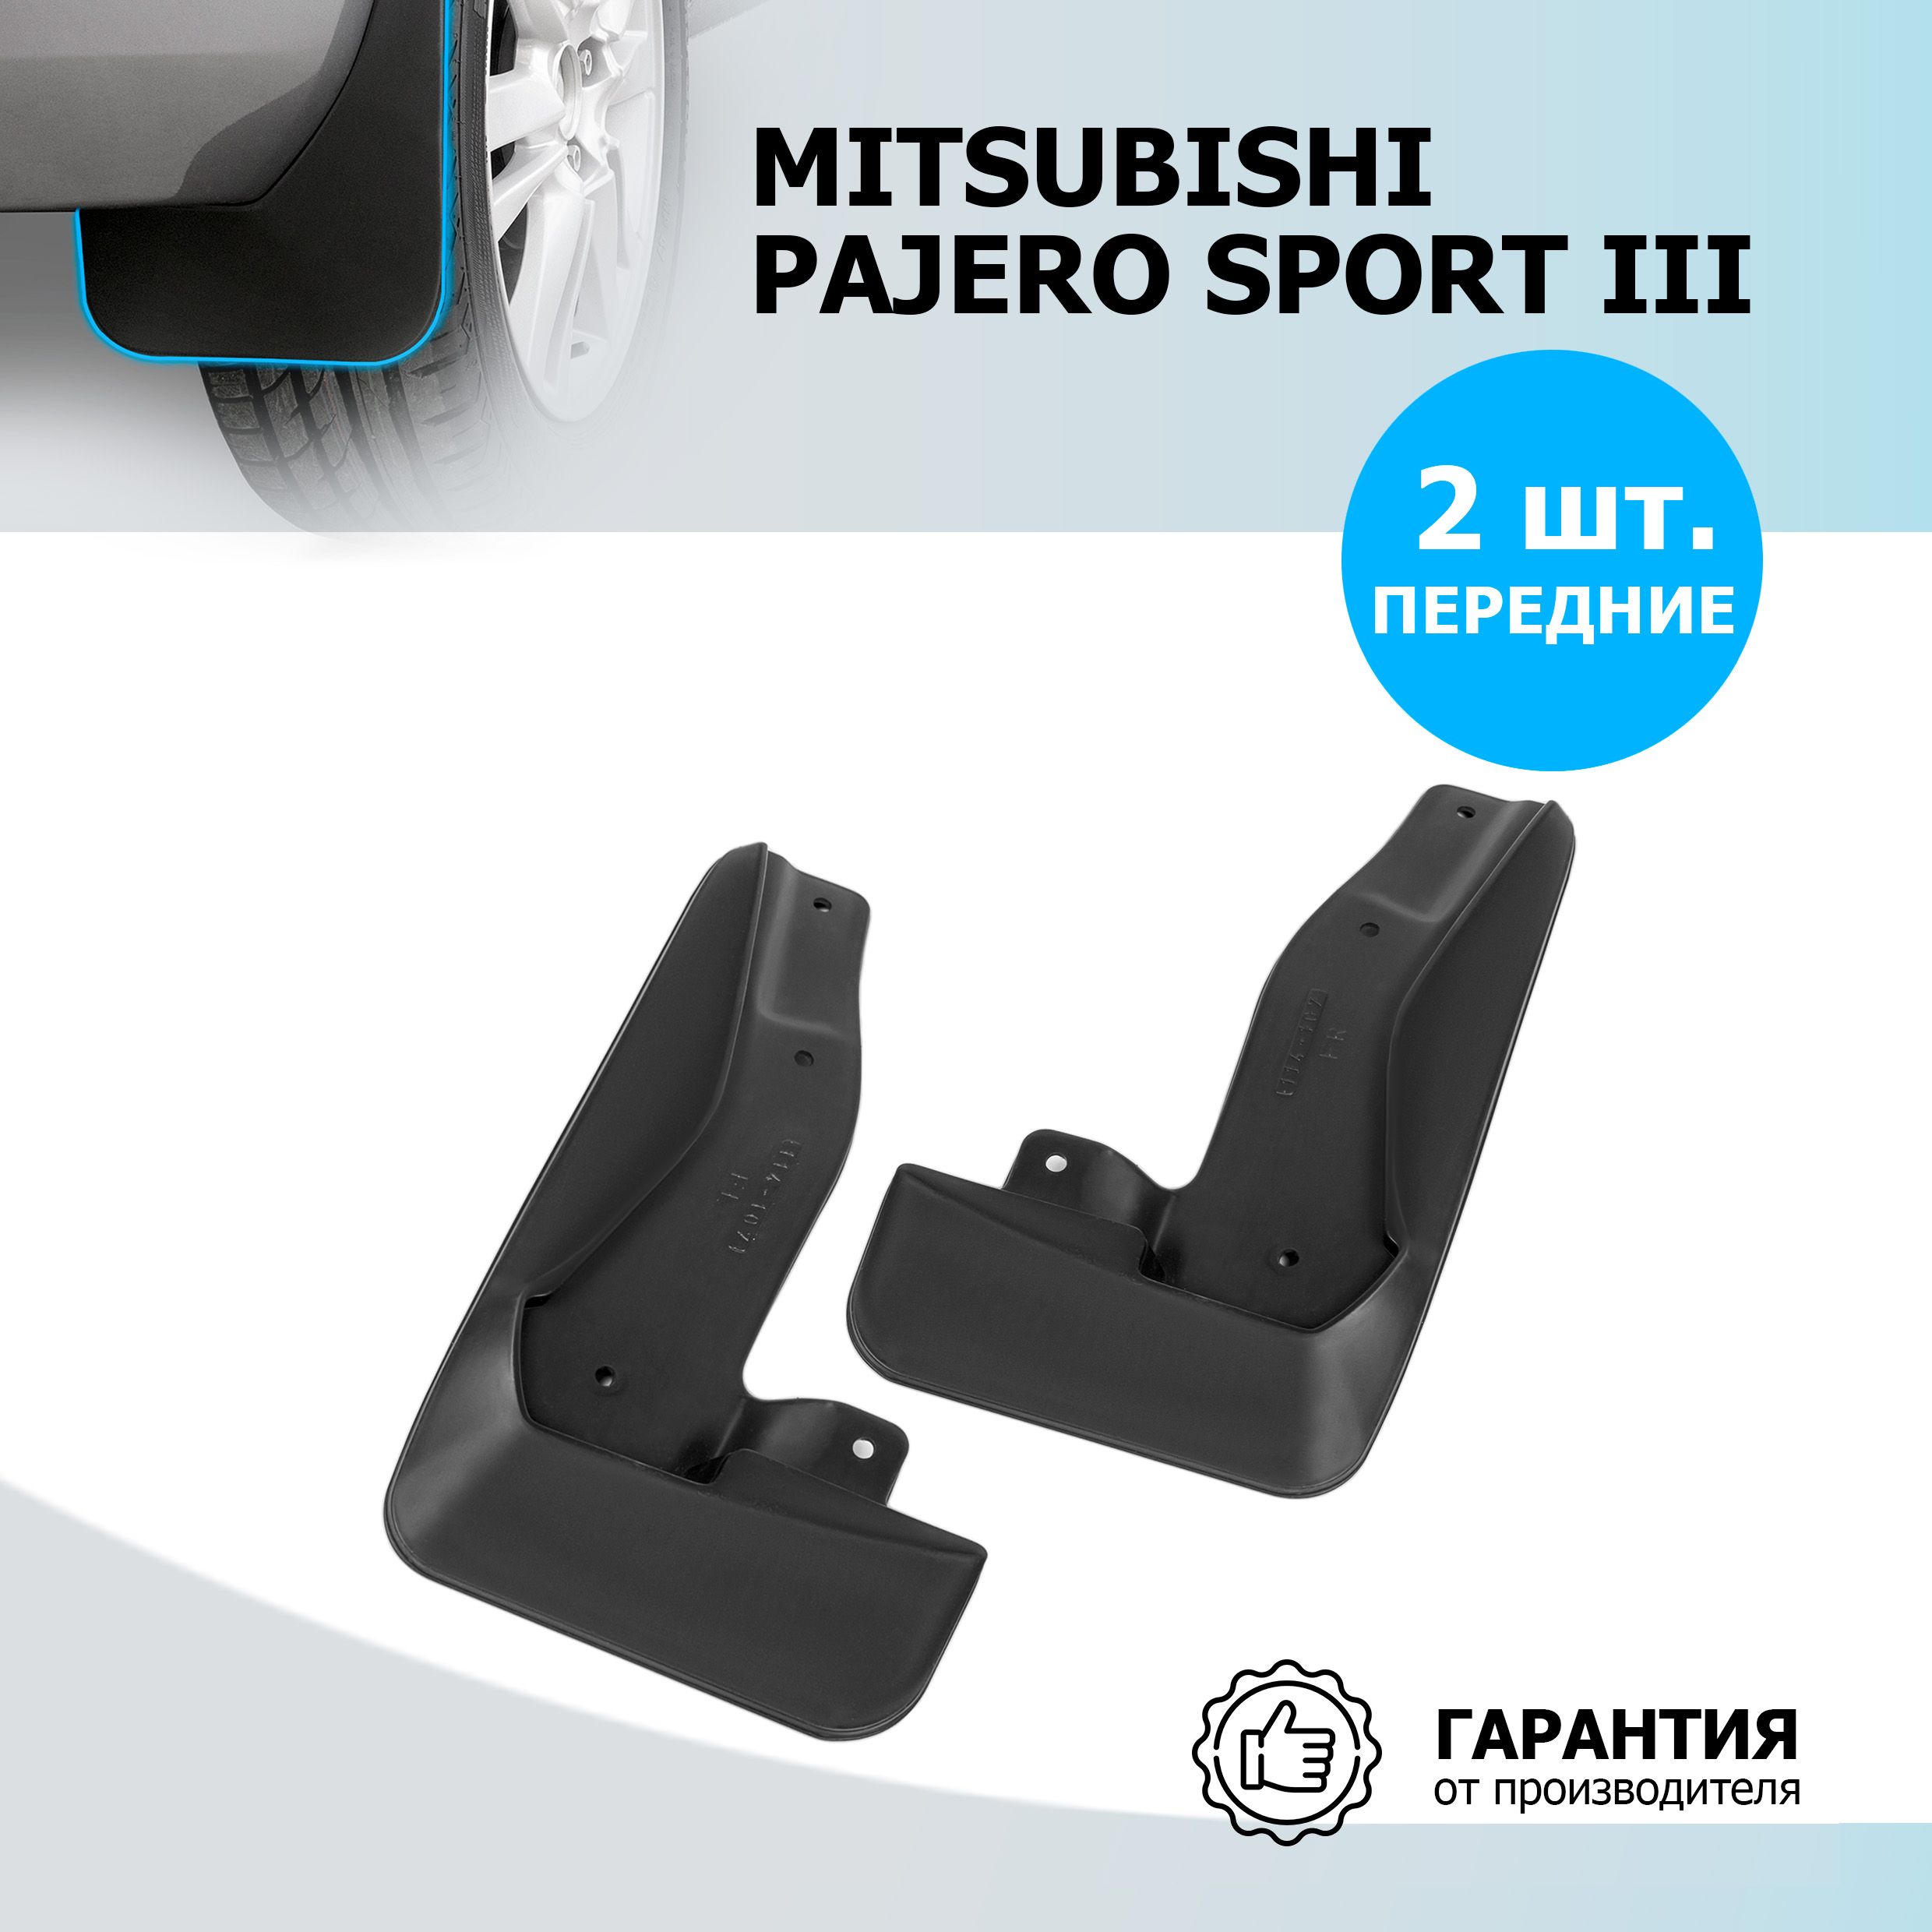 Брызговики для Mitsubishi Pajero III (Митсубиси Паджеро 3)